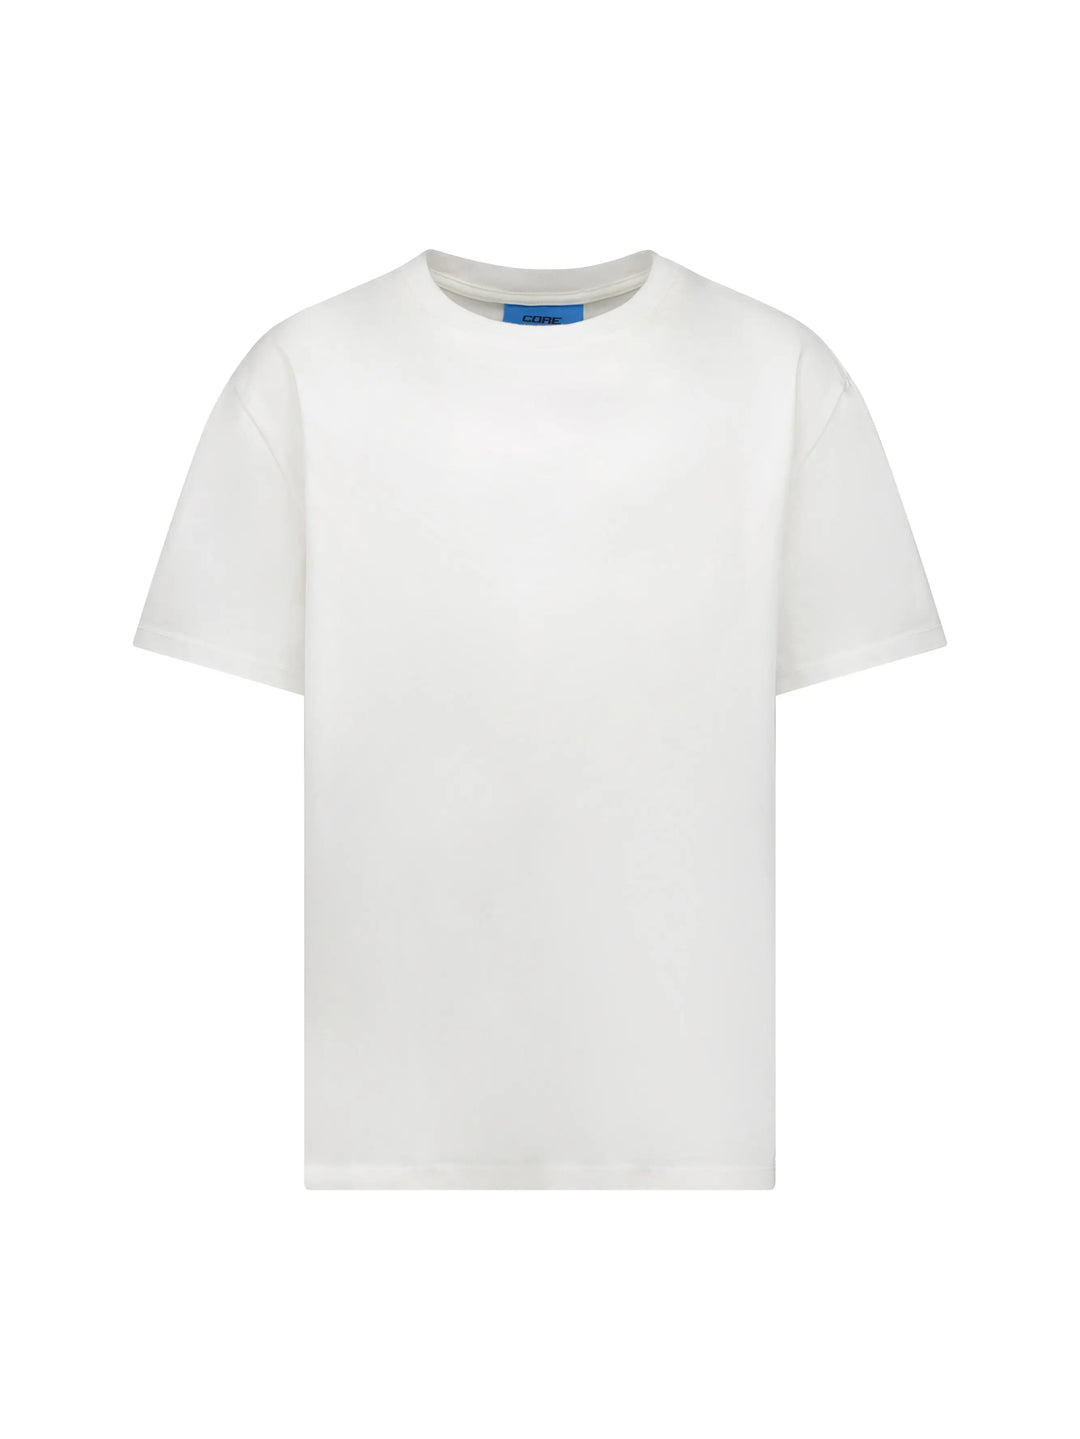 CORE Essential T-Shirt Arctic in Melbourne, Australia - Prior